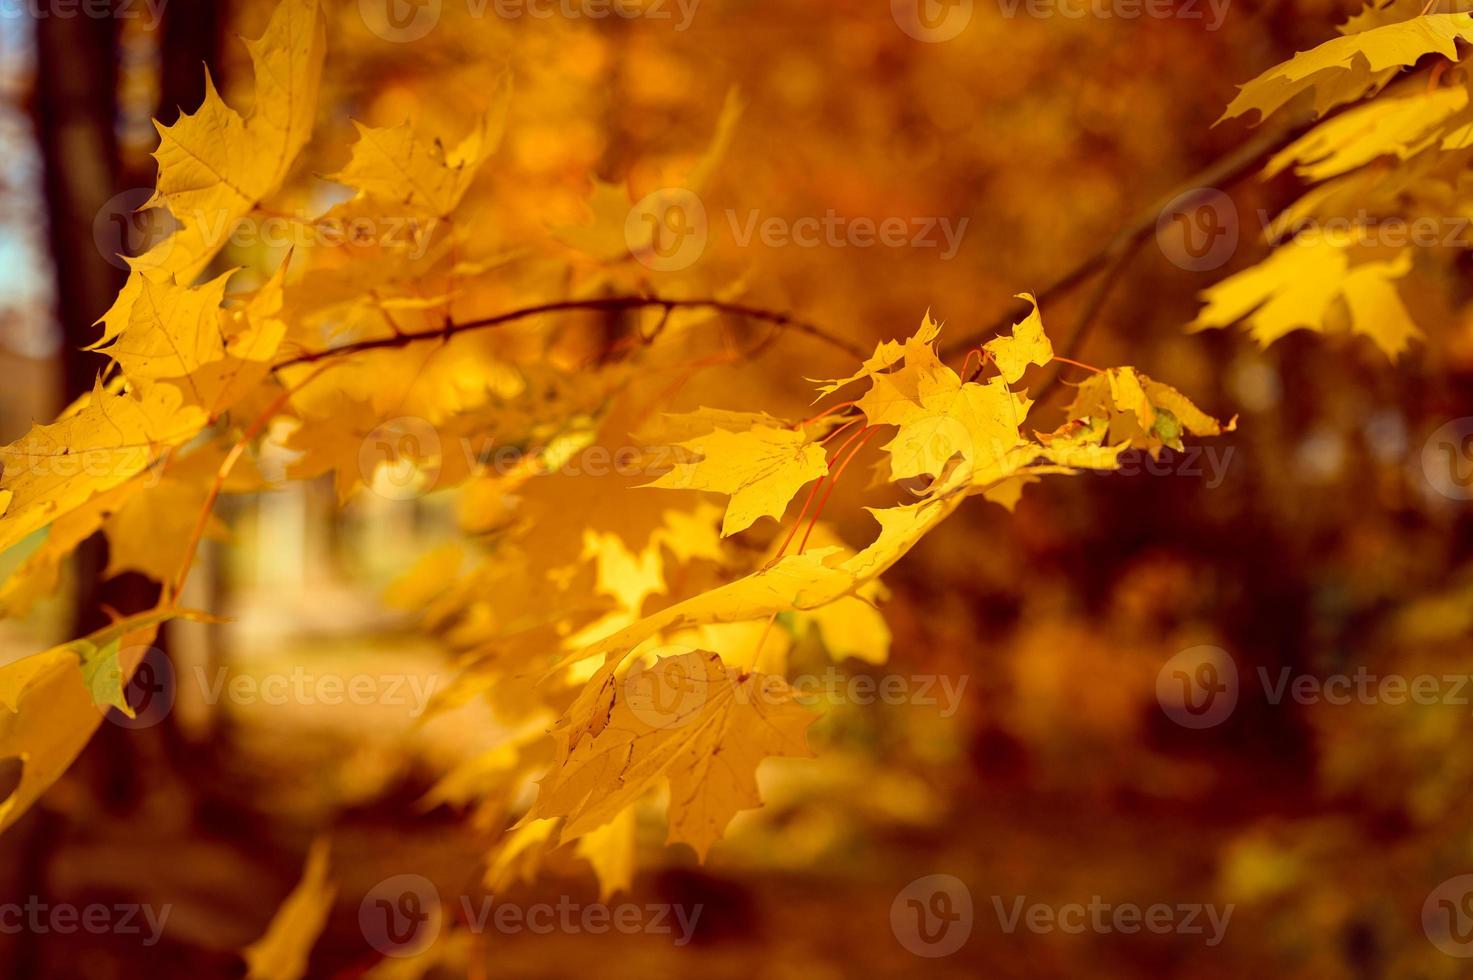 otoño dorado tiempo de otoño foto